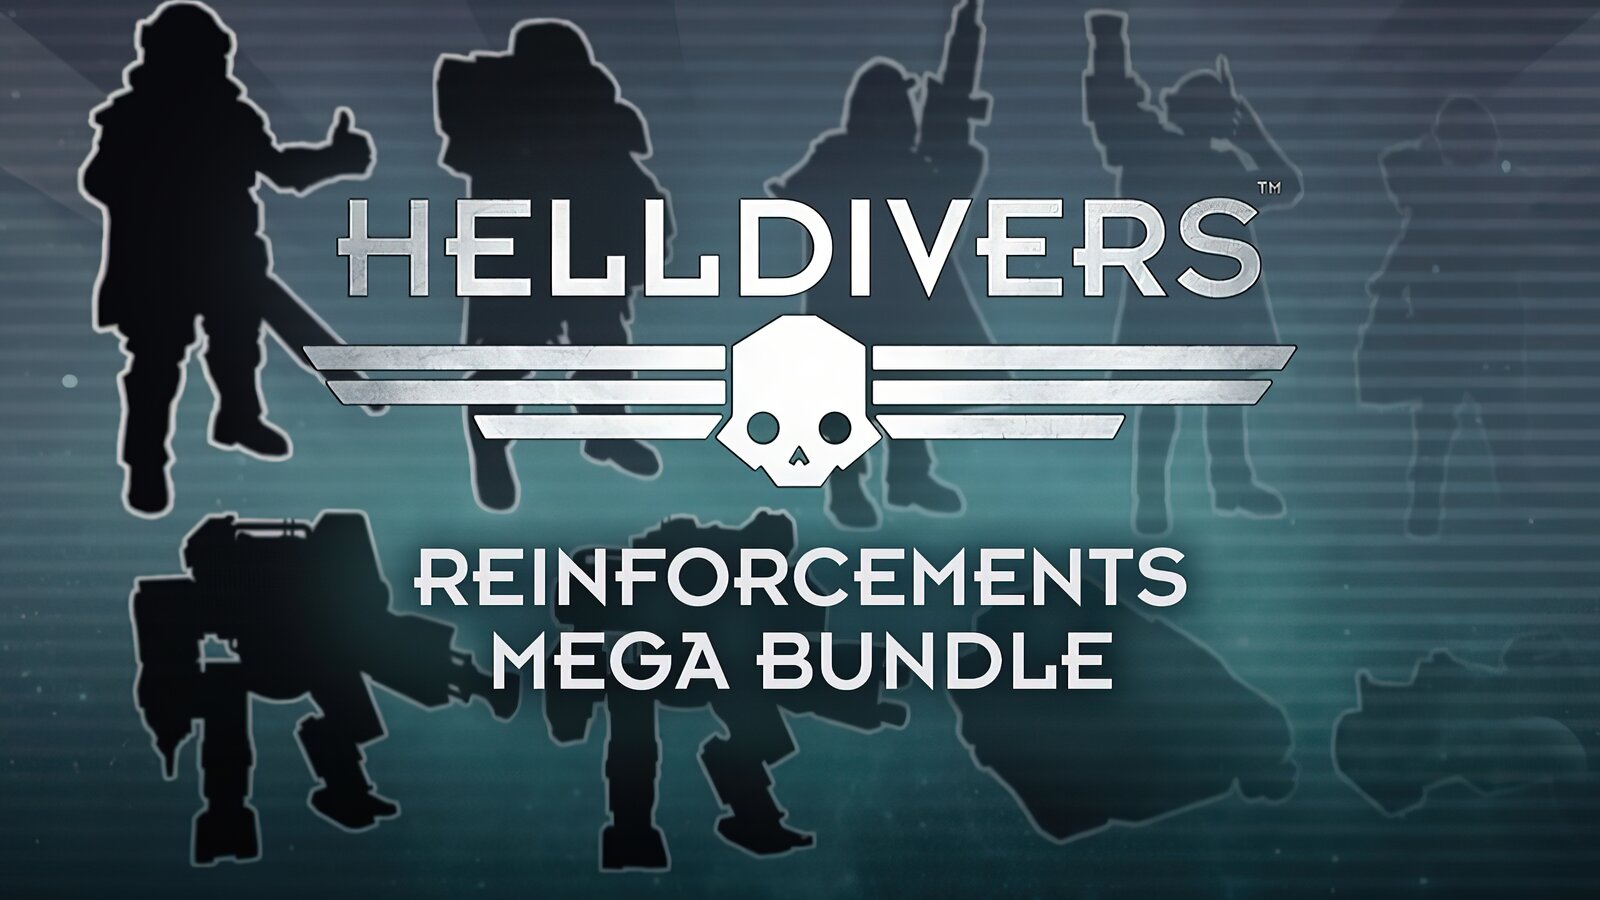 HELLDIVERS - Reinforcements Mega Bundle